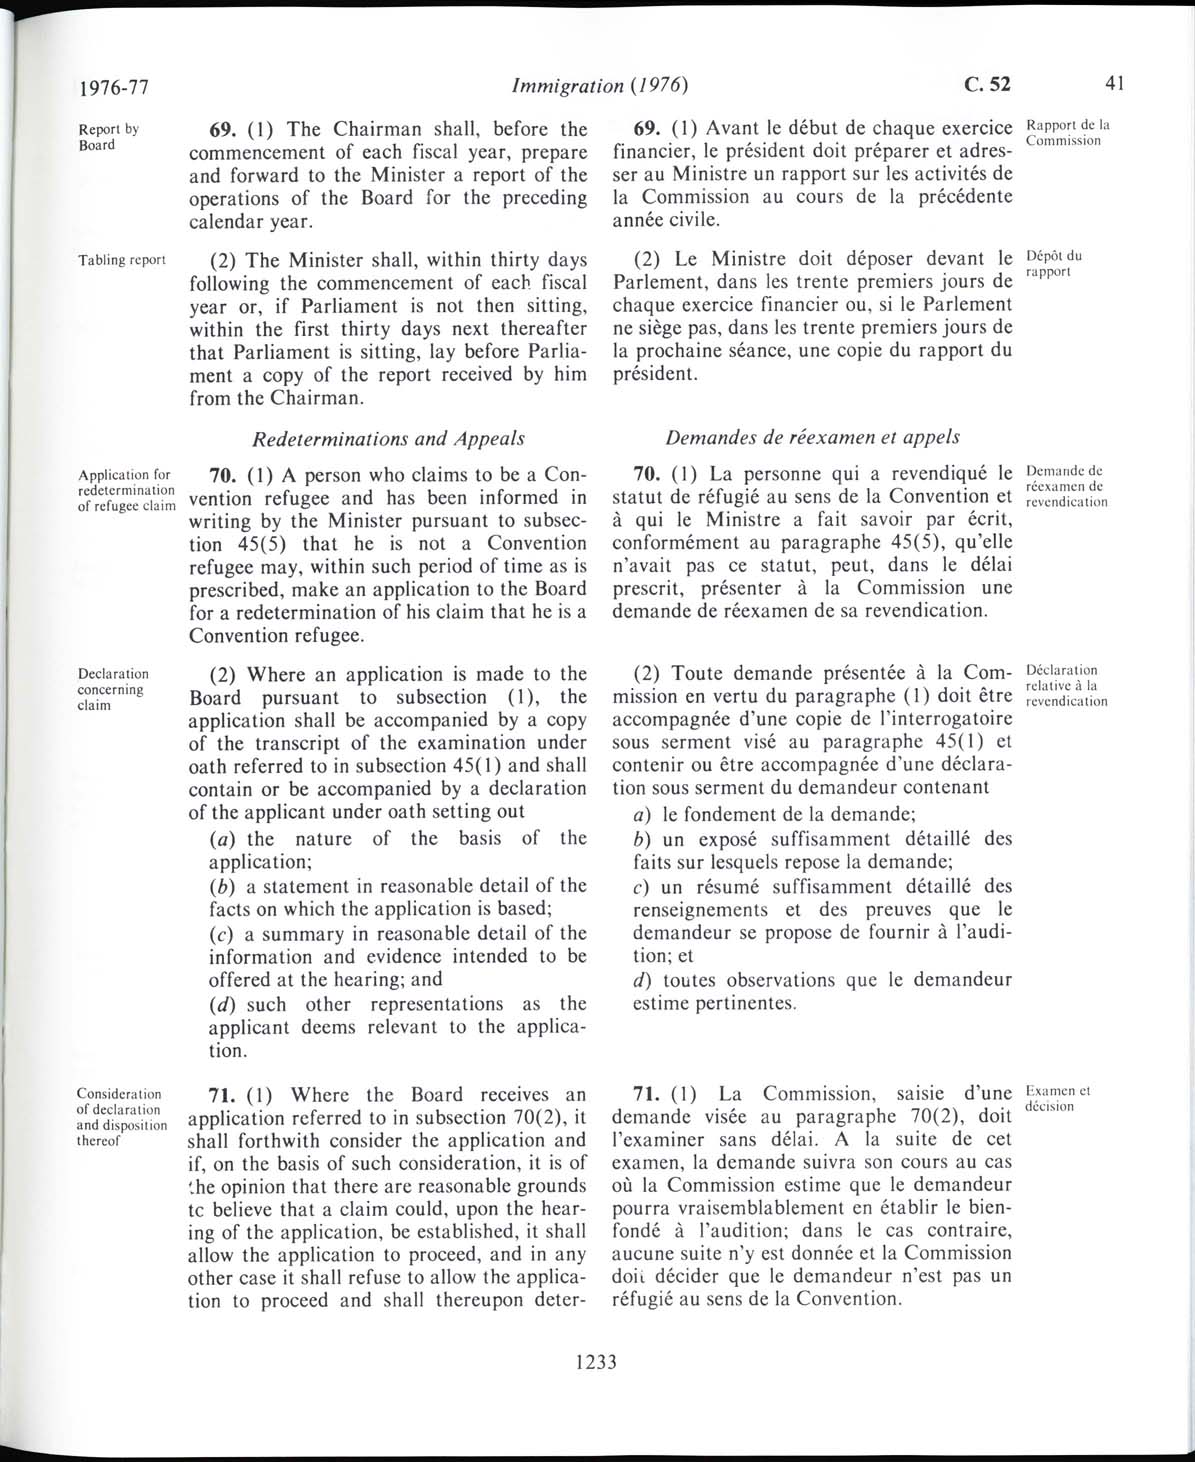 Page 1233 Loi sur l’immigration de 1976